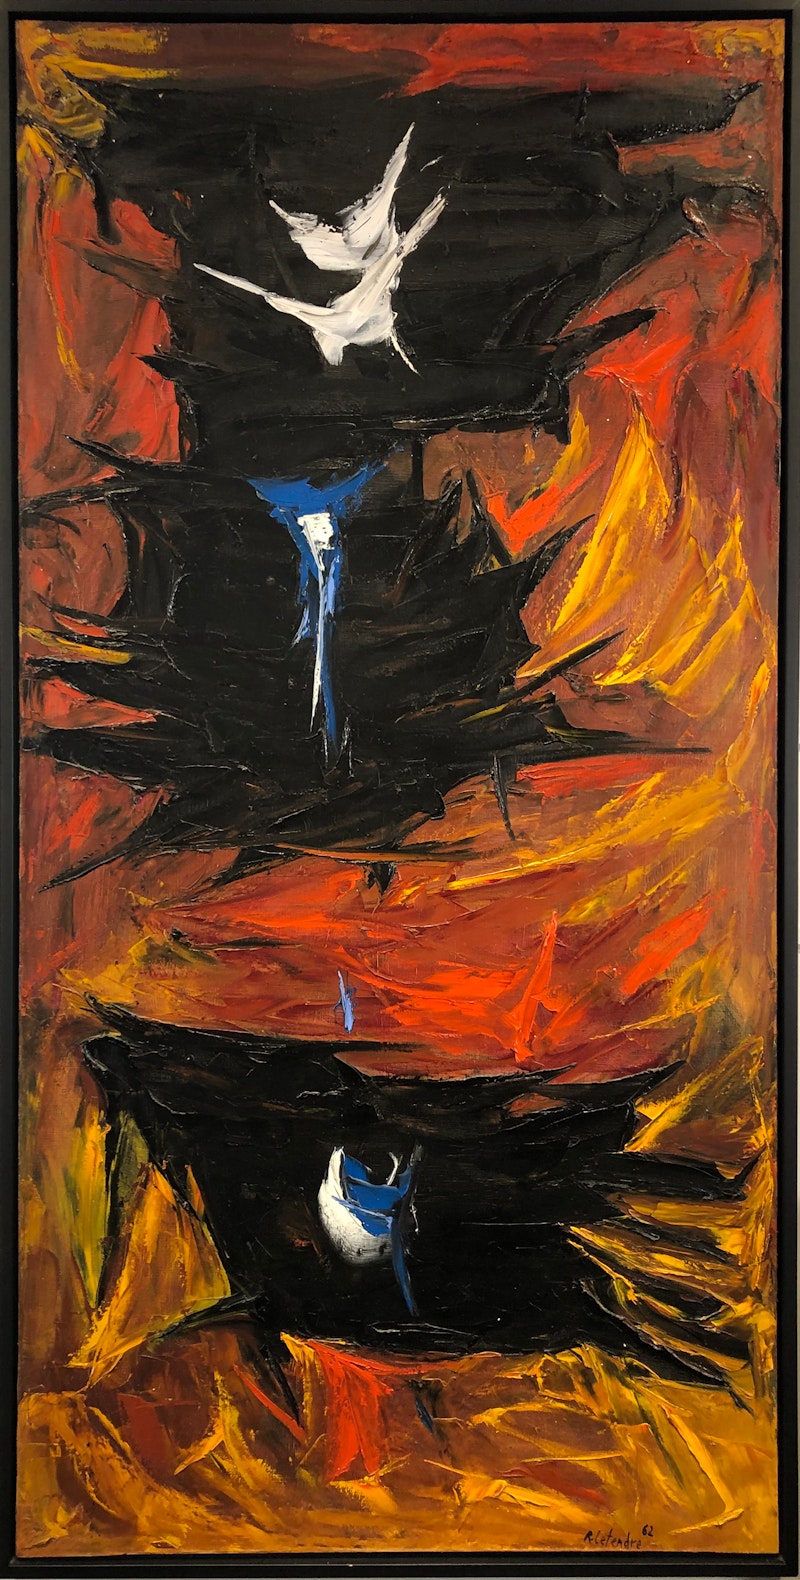 Rencontre en Flamme by Rita Letendre, 1962 Oil on Canvas - (84x42 in)